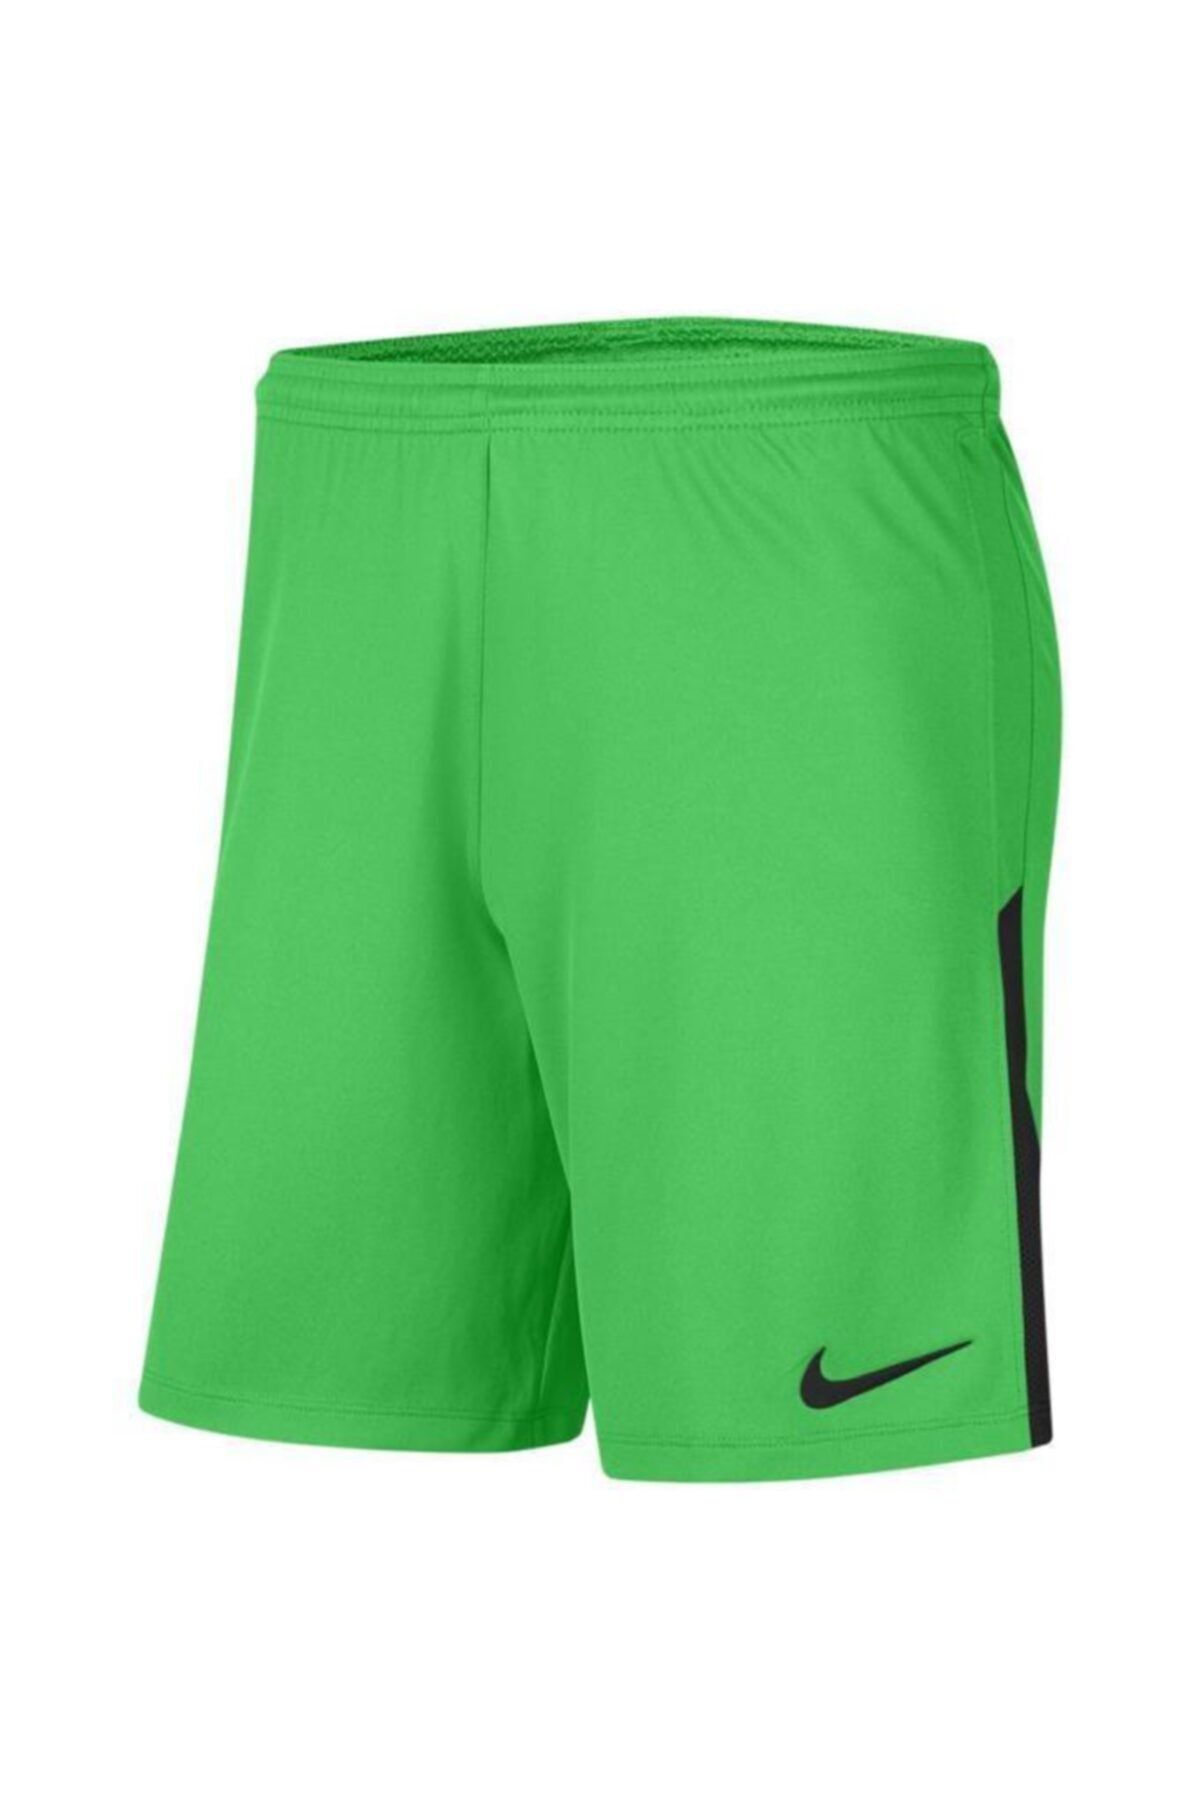 Nike Erkek Yeşil Şort Bv6852-329